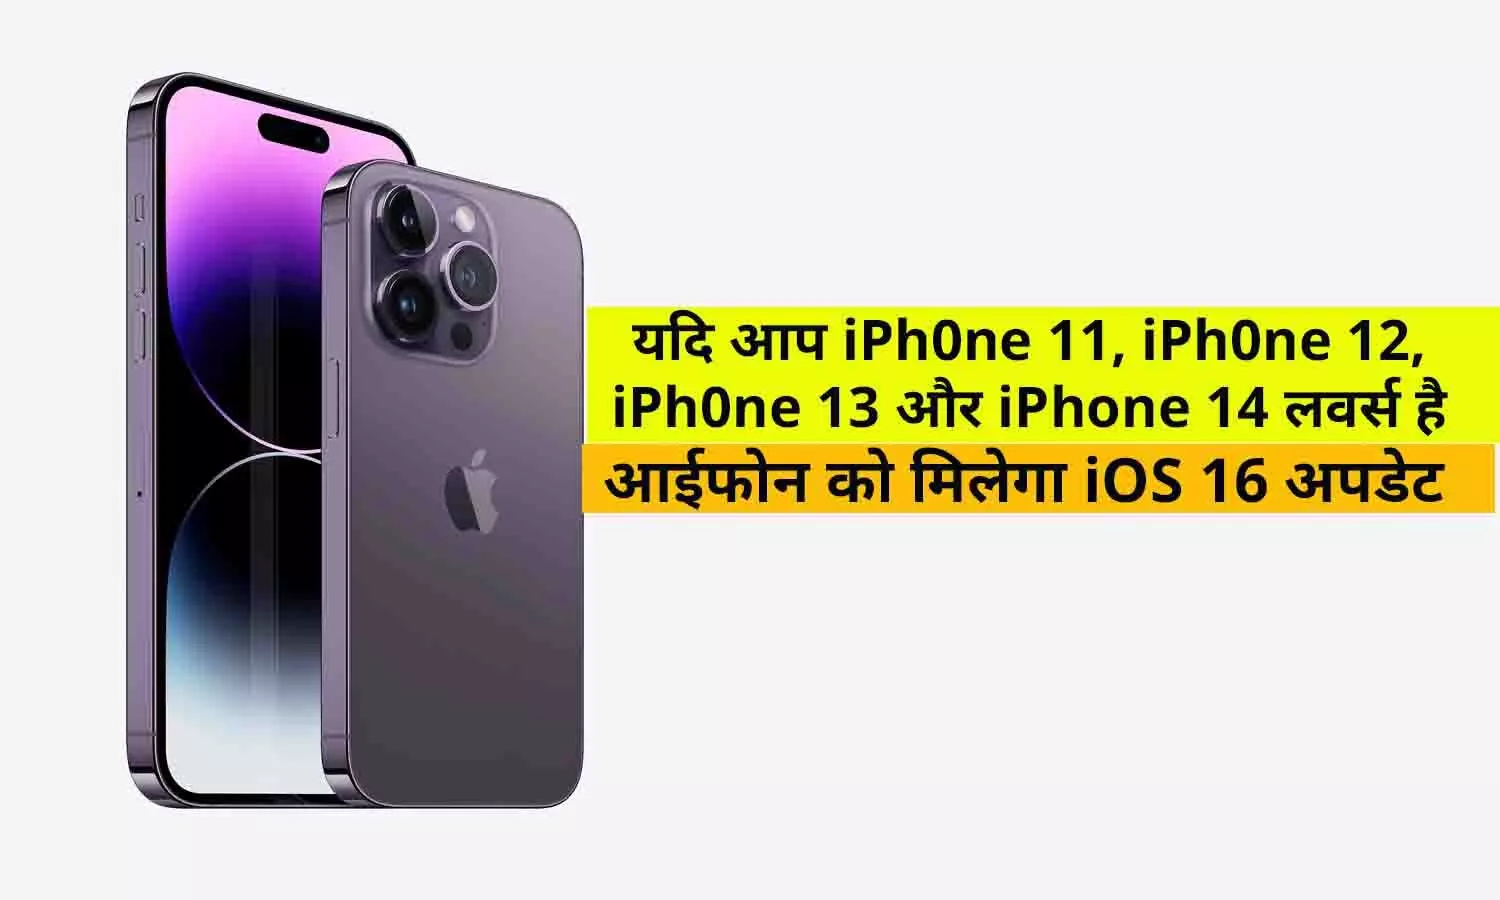 यदि आप iPhone 11, iPhone 12, iPhone 13 और iPhone 14 लवर्स है तो इन आईफोन को मिलेगा iOS 16 अपडेट, फटाफट जाने